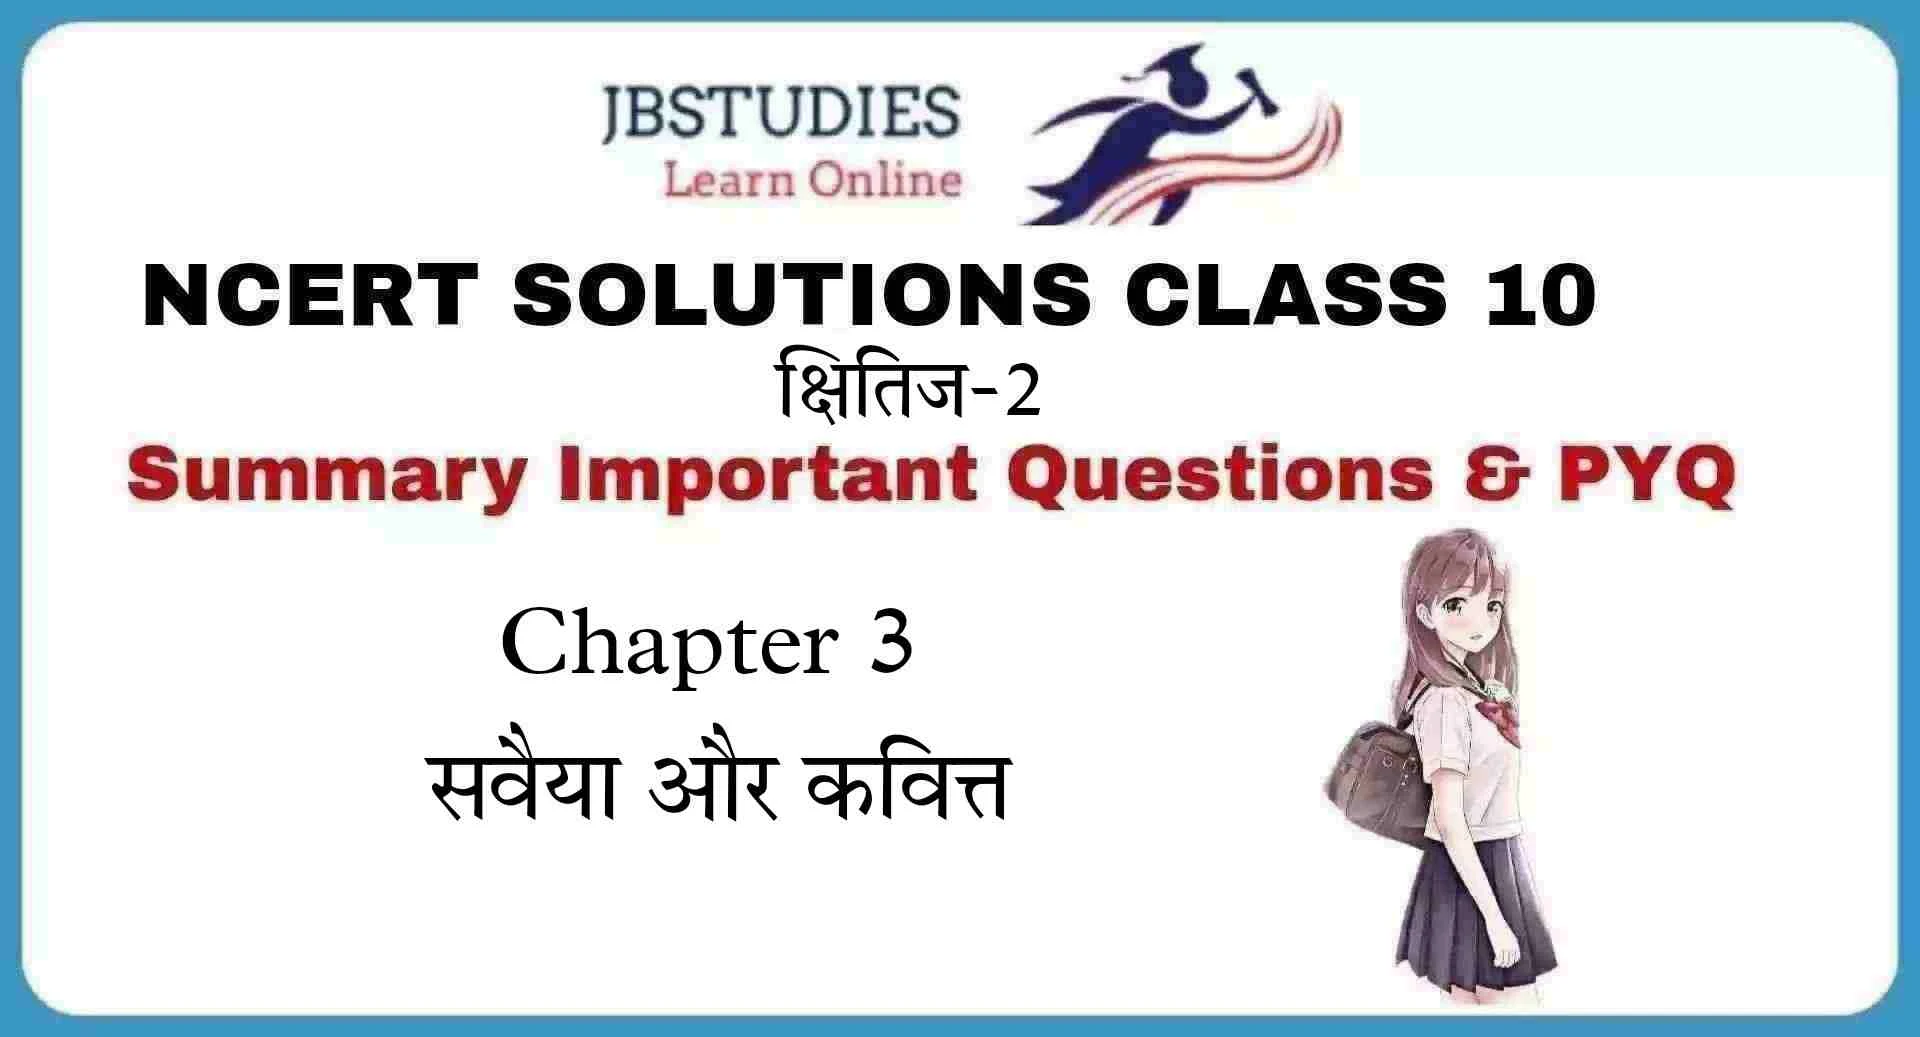 Solutions Class 10 क्षितिज-2 Chapter-3 (सवैया और कवित्त)